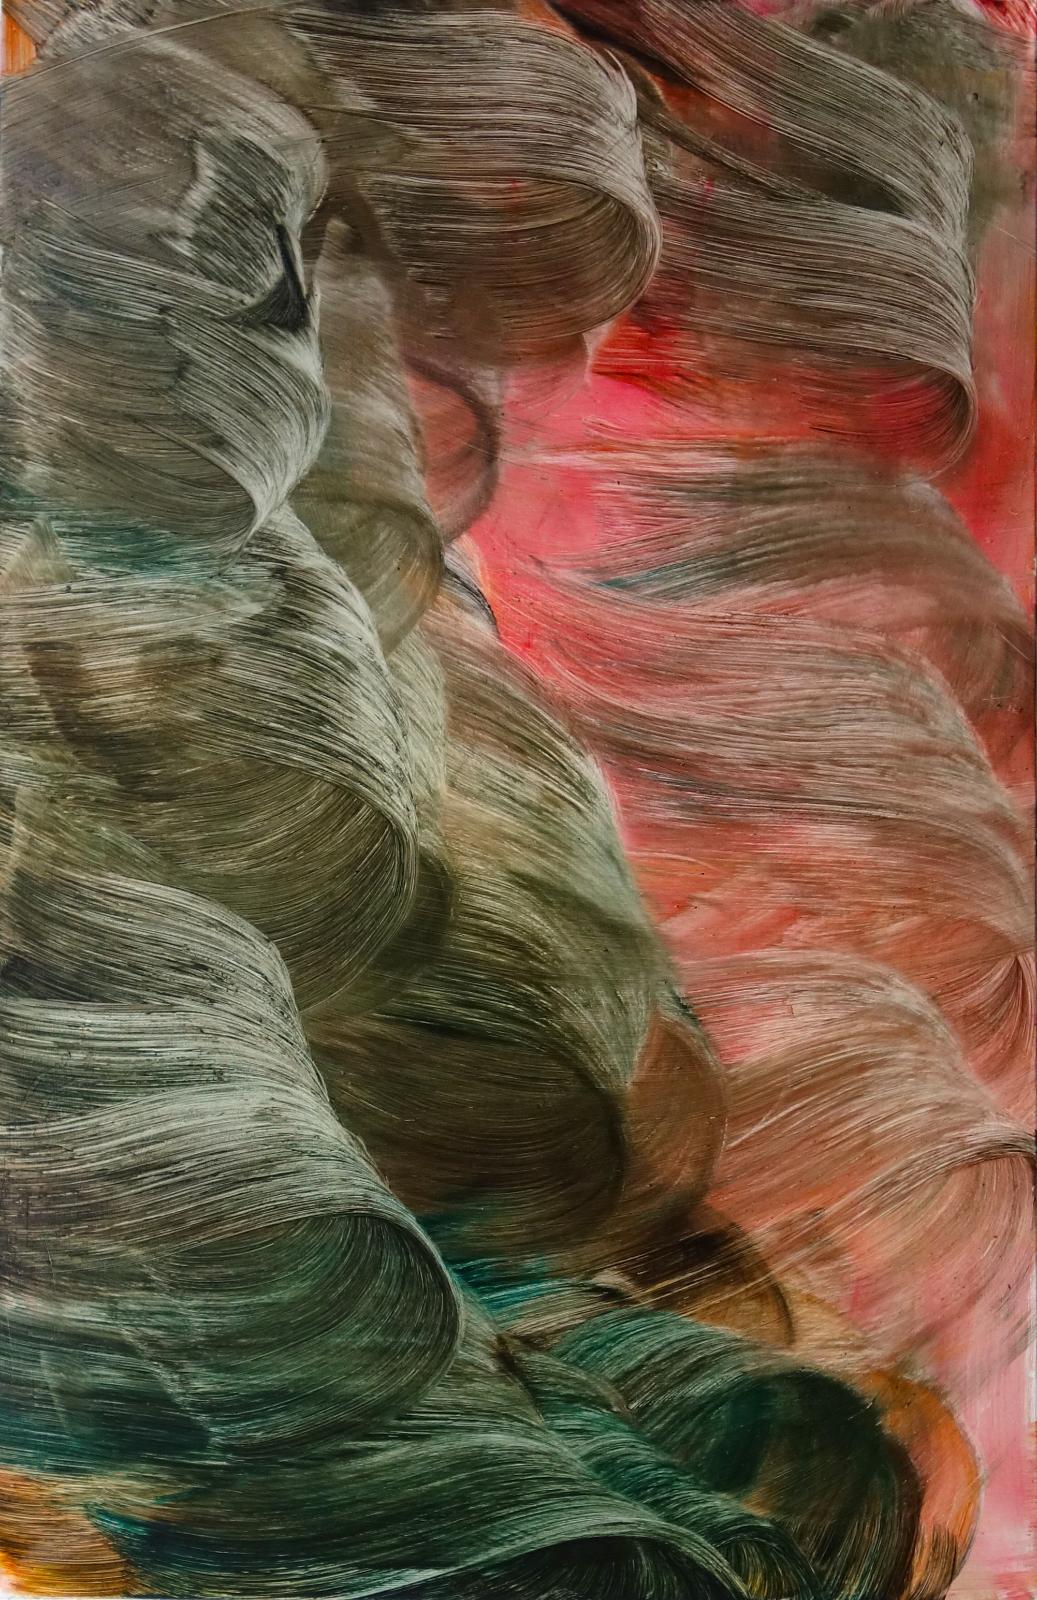 Isa Dahl, wanderung, 2020, Öl auf Leinwand, 200 cm x 130 cm, Preis auf Anfrage, Galerie Cyprian Brenner